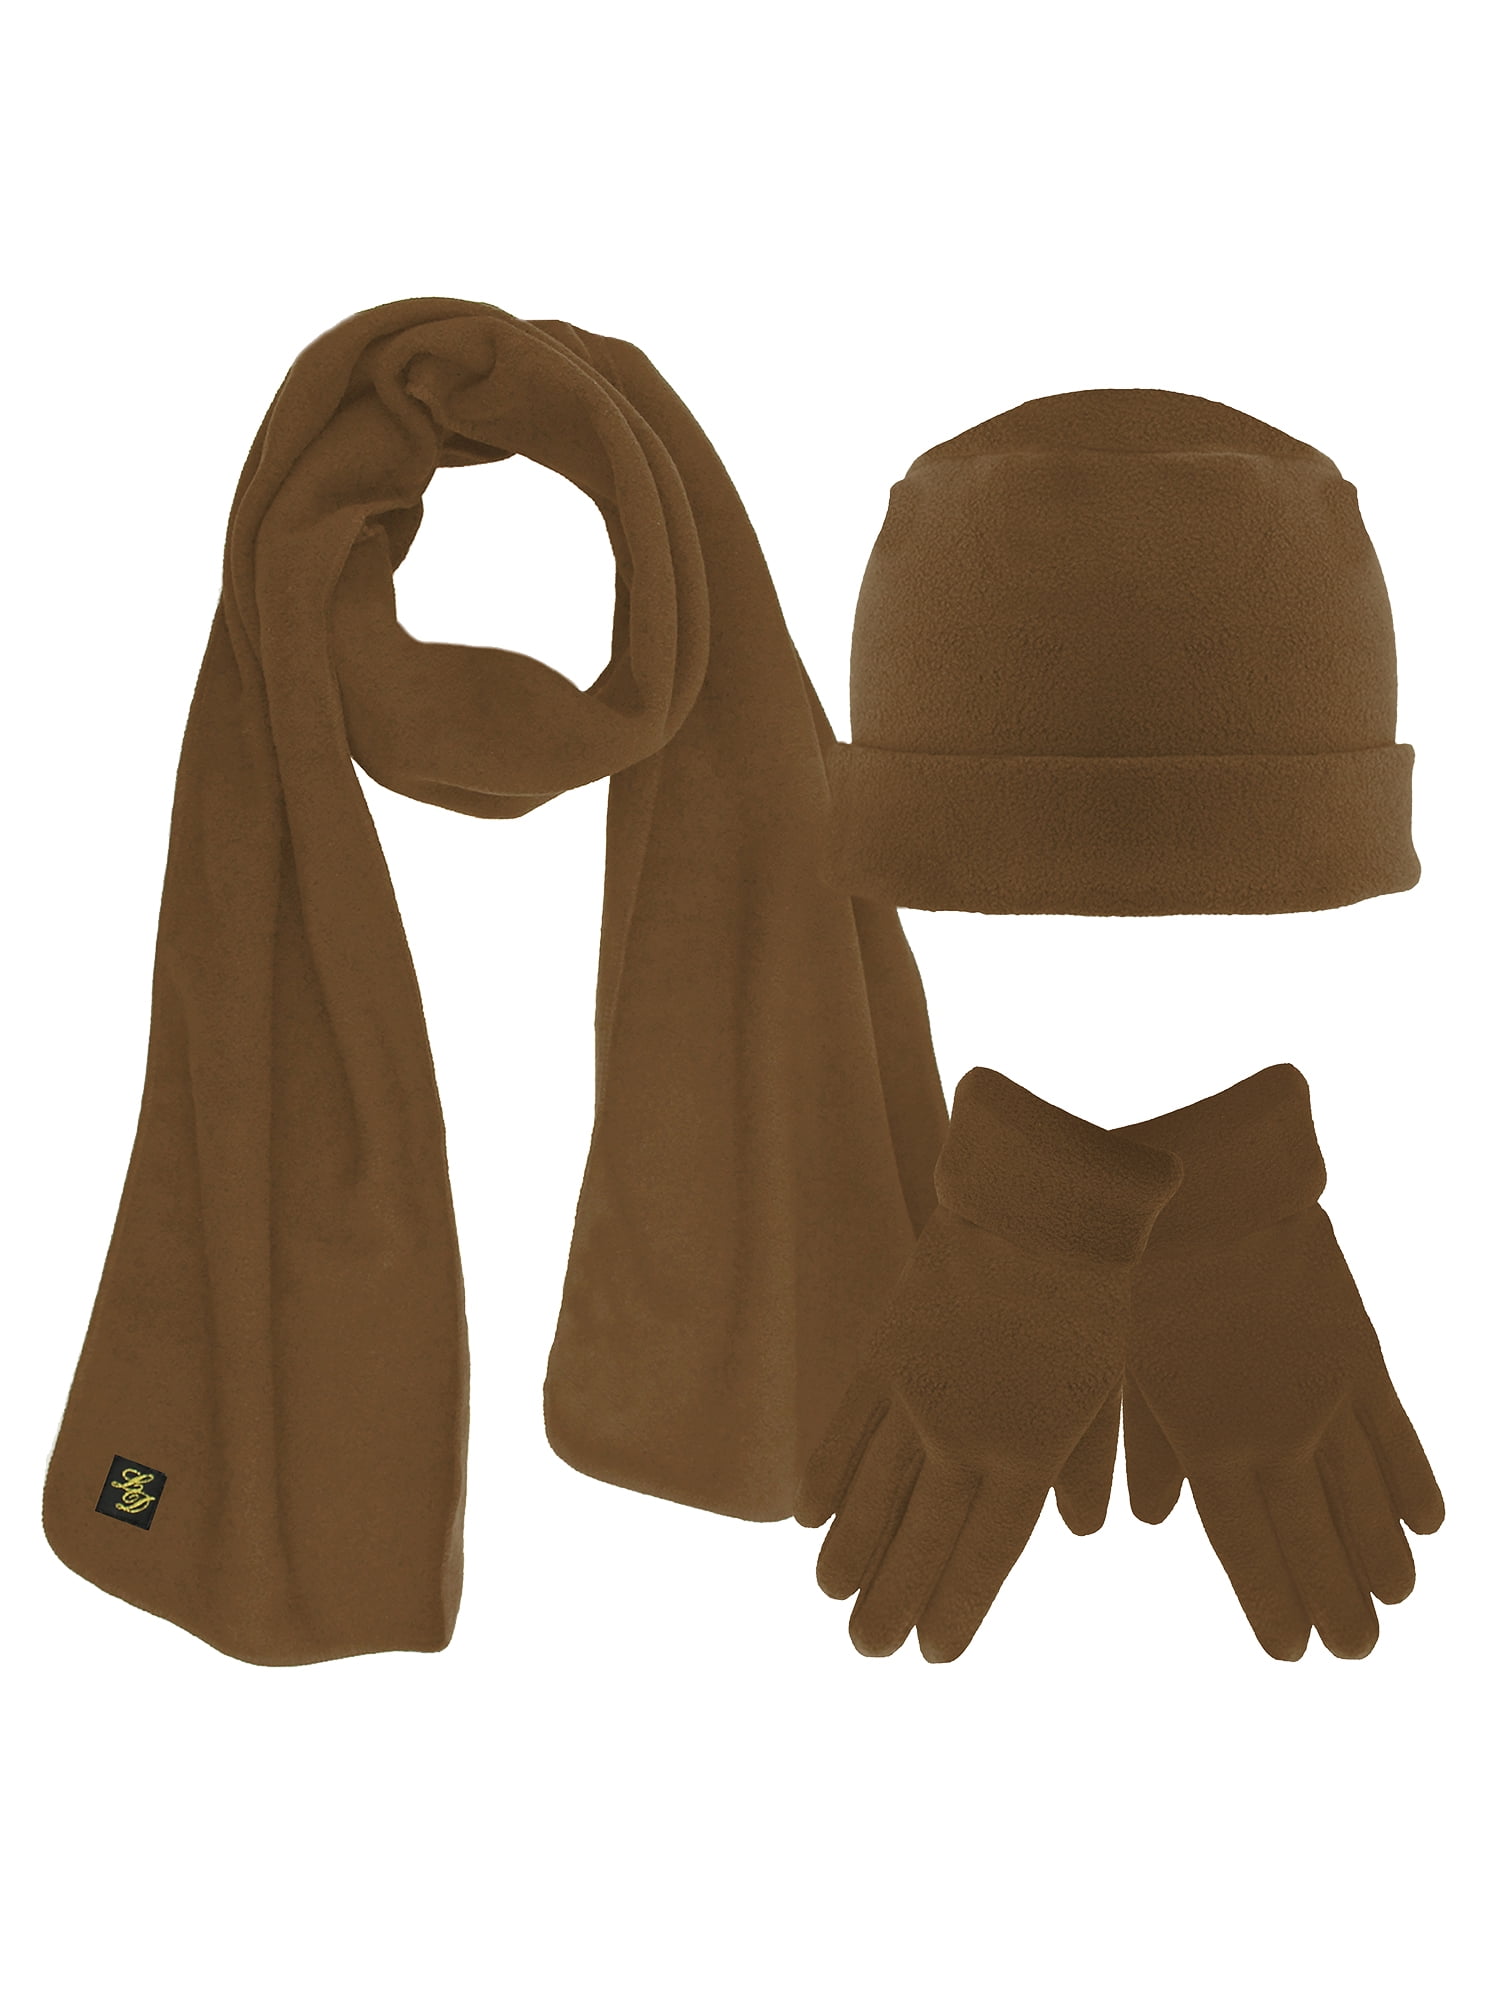 Gold Metal Matching Set 1 Fleece Pair Of Gloves 1 Scarf & 1 Hat TAN SZ Medium 